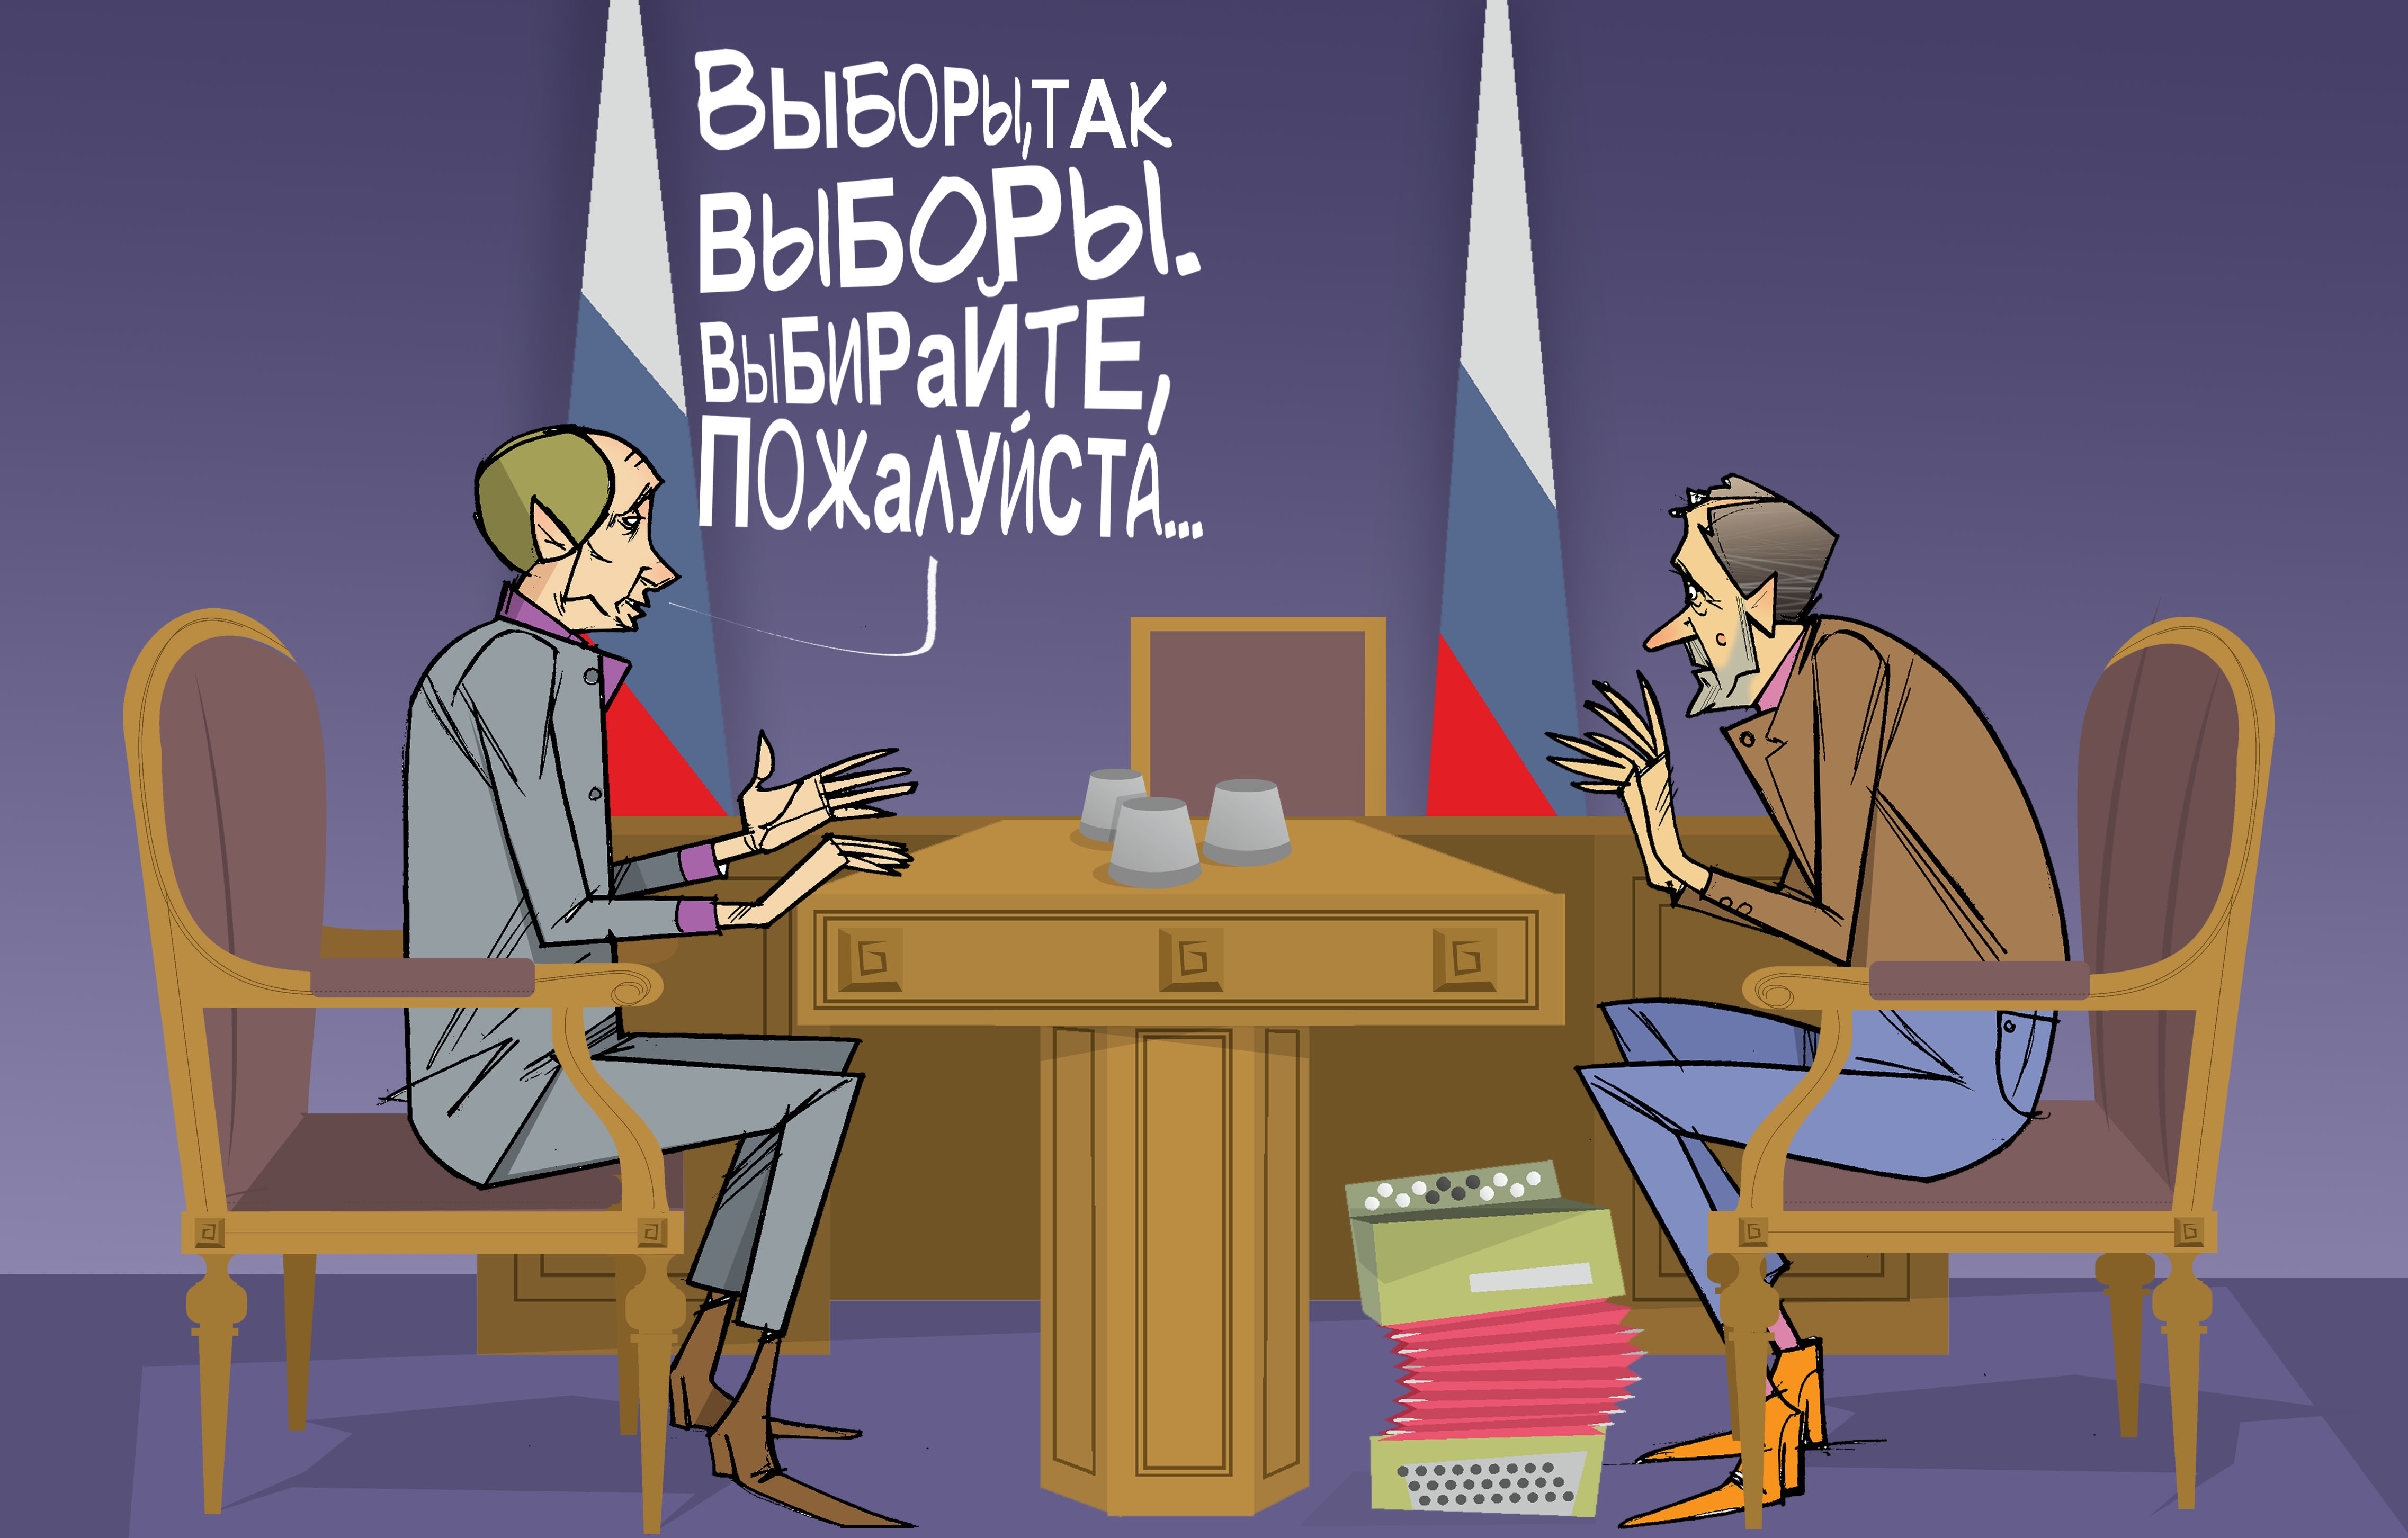 Выбирайте, пожалуйста... #Выборы #ПрезидентУР #Волков © Газета "День" 2013 